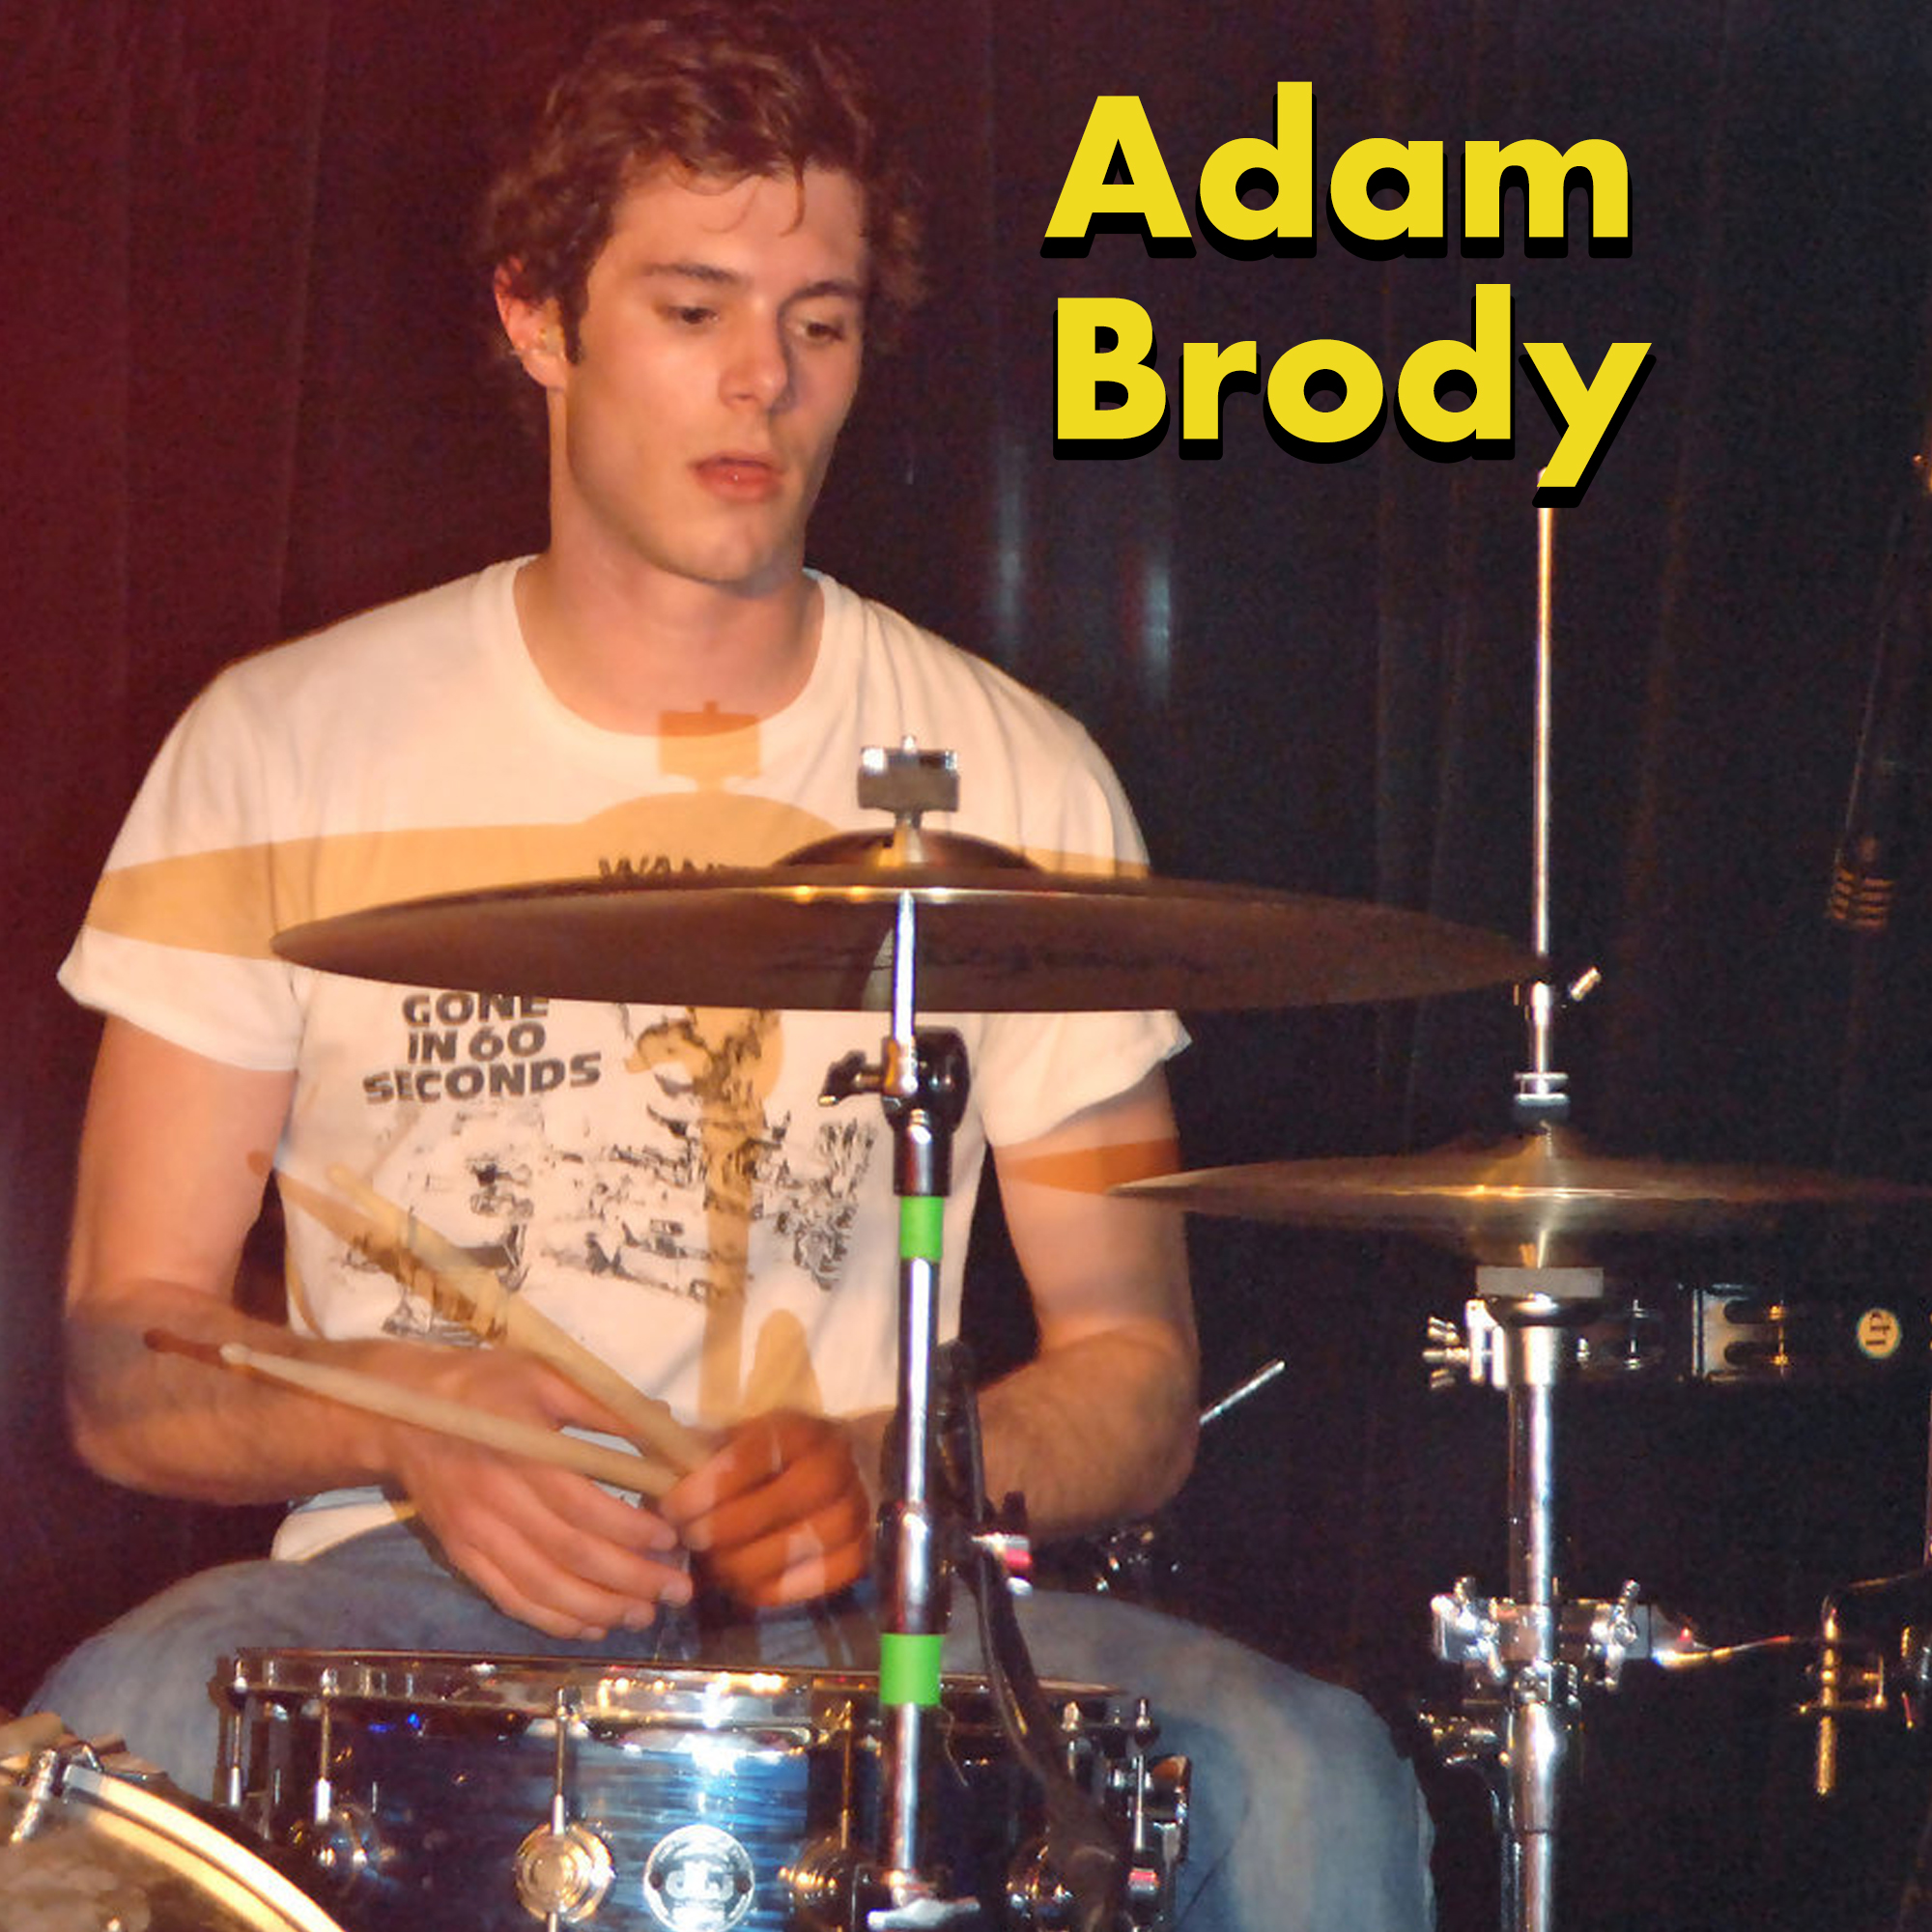 actors in bands - adam brody big japan - Adam Brody Gorie In Oo Seconds shi